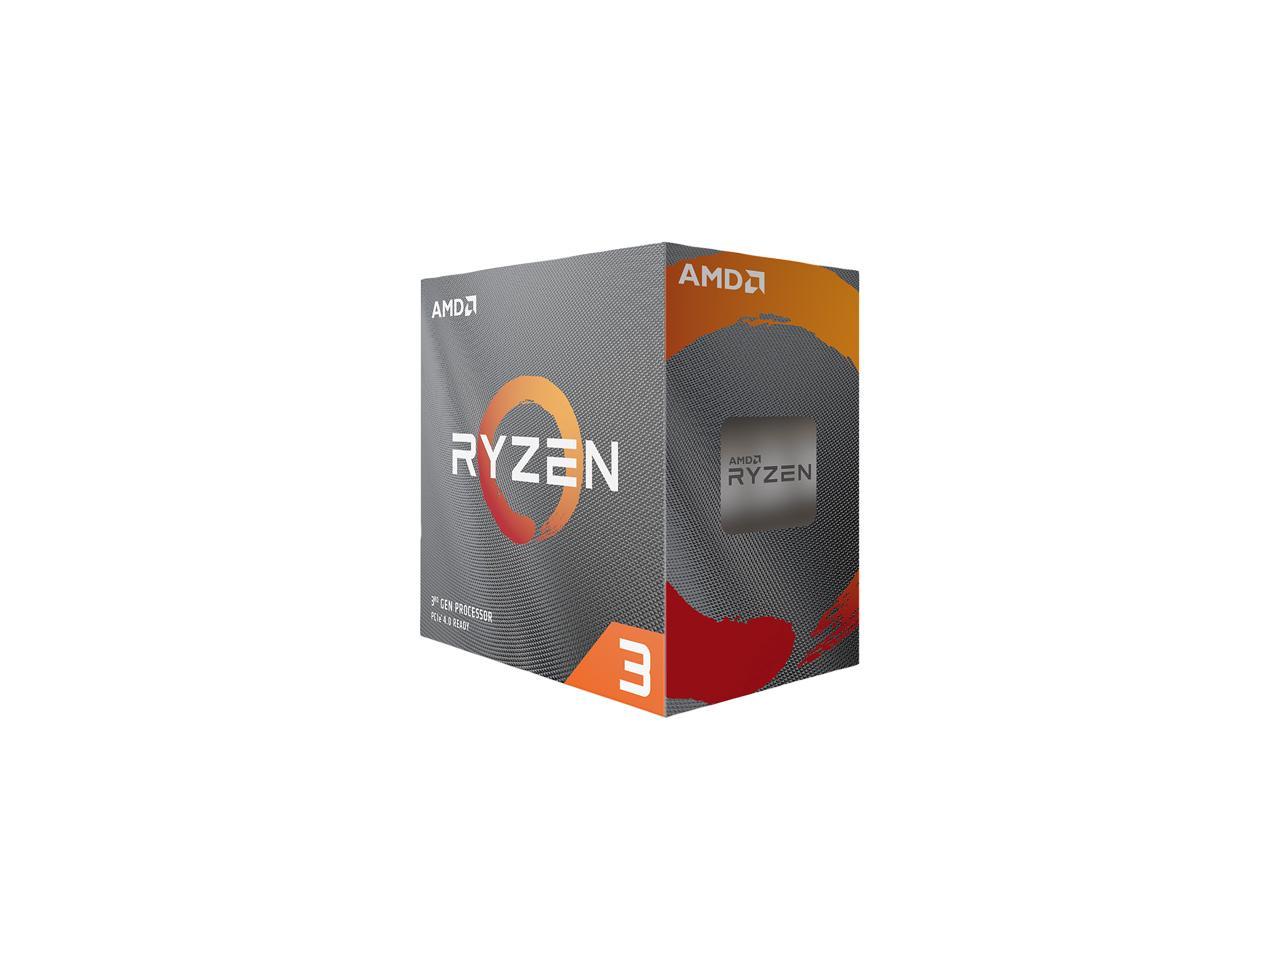 AMD Ryzen 3 3300X 3.8 GHz Desktop CPU Processor - Newegg.com